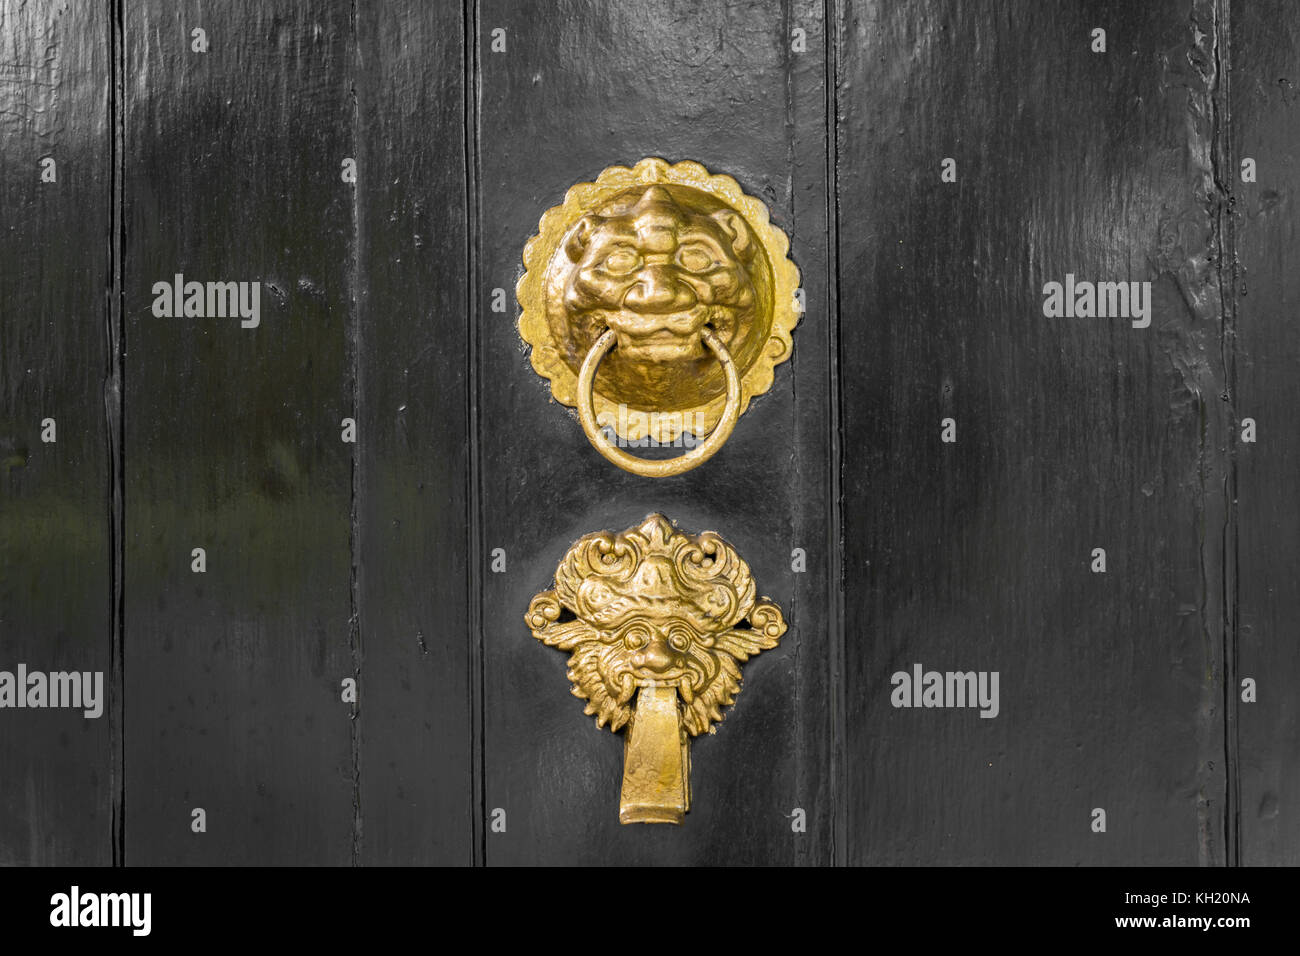 Antique gold or brass door knocker ornate on black door Stock Photo